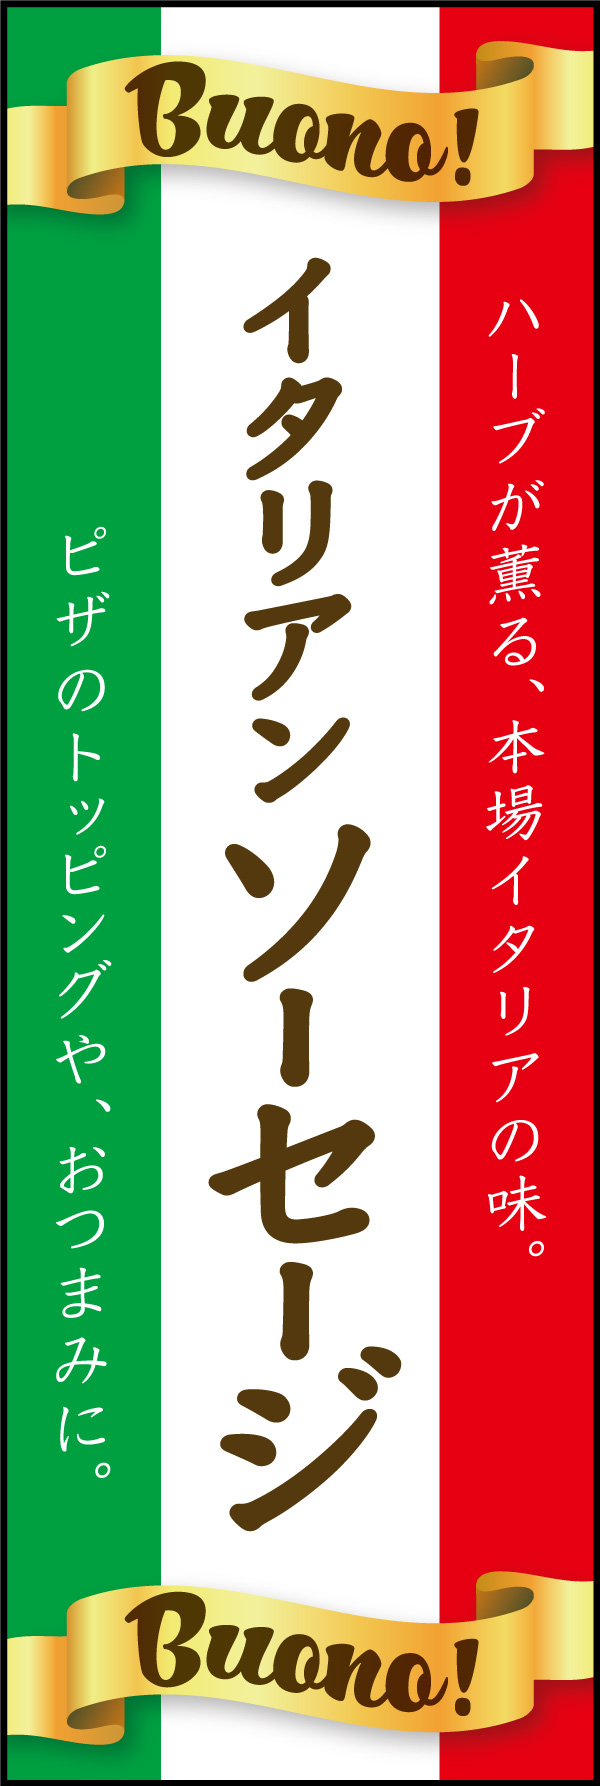 イタリアソーセージ 01「イタリアンソーセージ」ののぼりです。イタリアの国旗をイメージしたデザインで、イタリア独自製法のイタリアンソーセージを表現しました。(Y.M) 